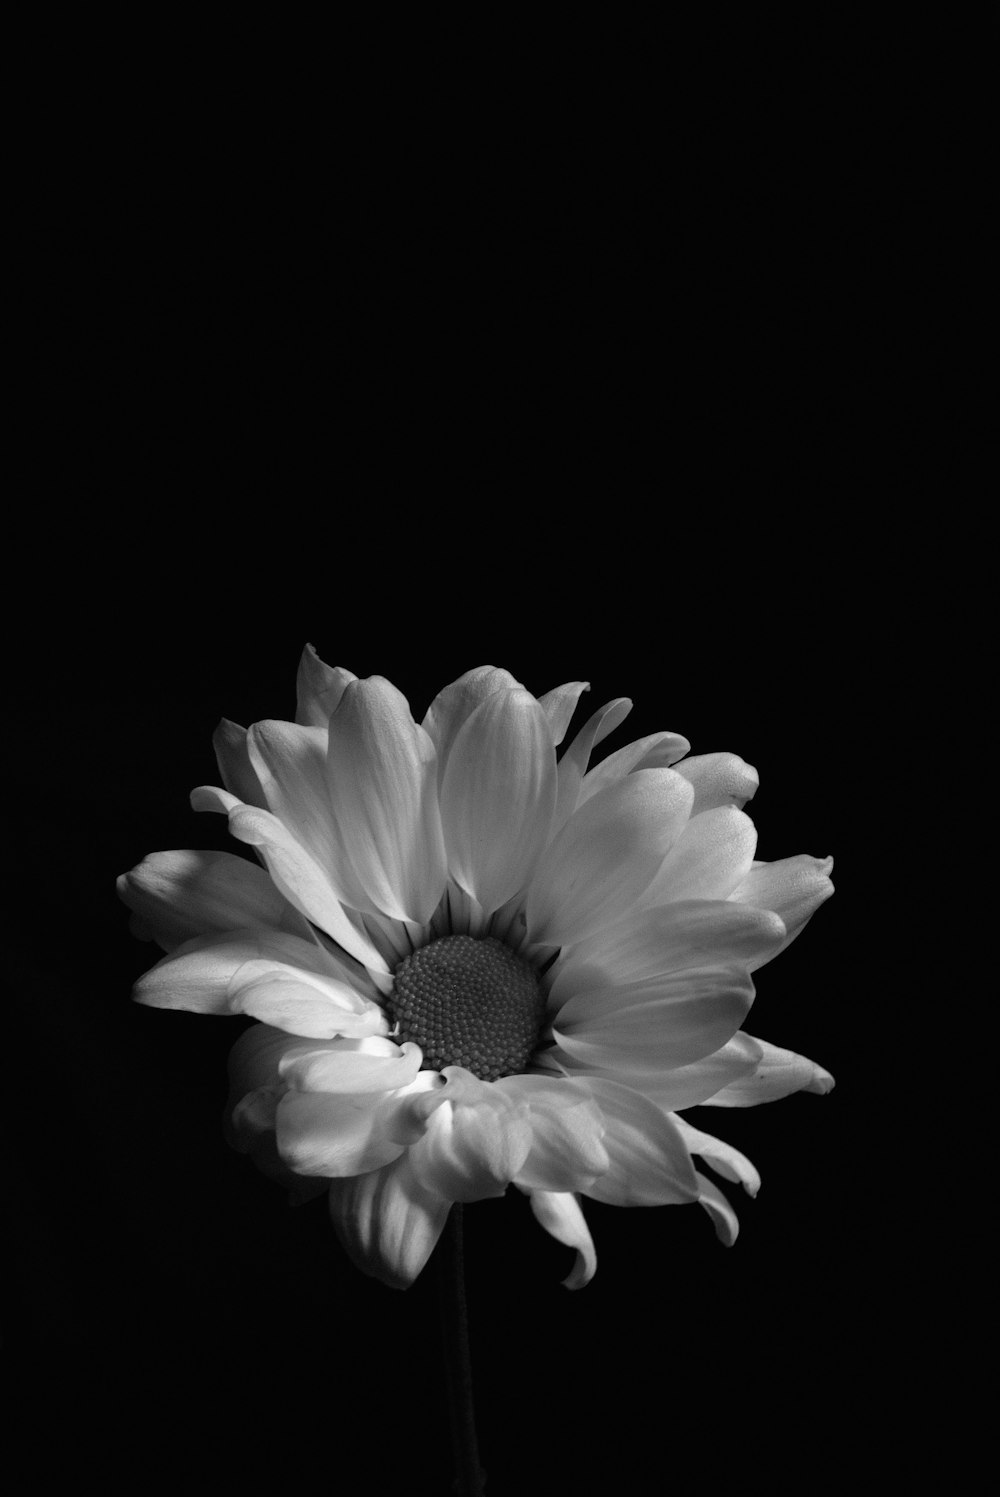 El top imagen 100 flores con fondo negro